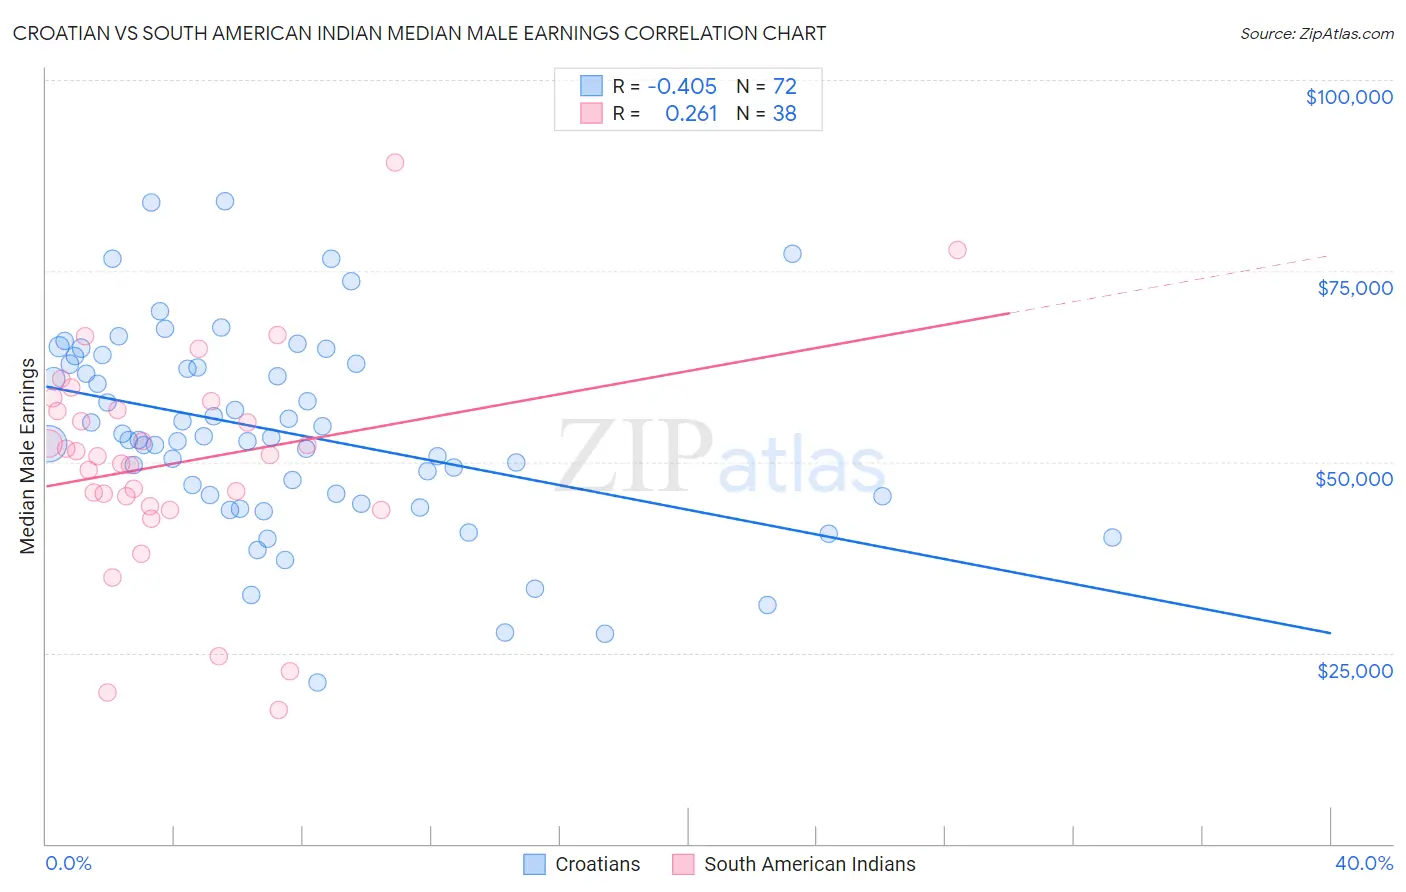 Croatian vs South American Indian Median Male Earnings